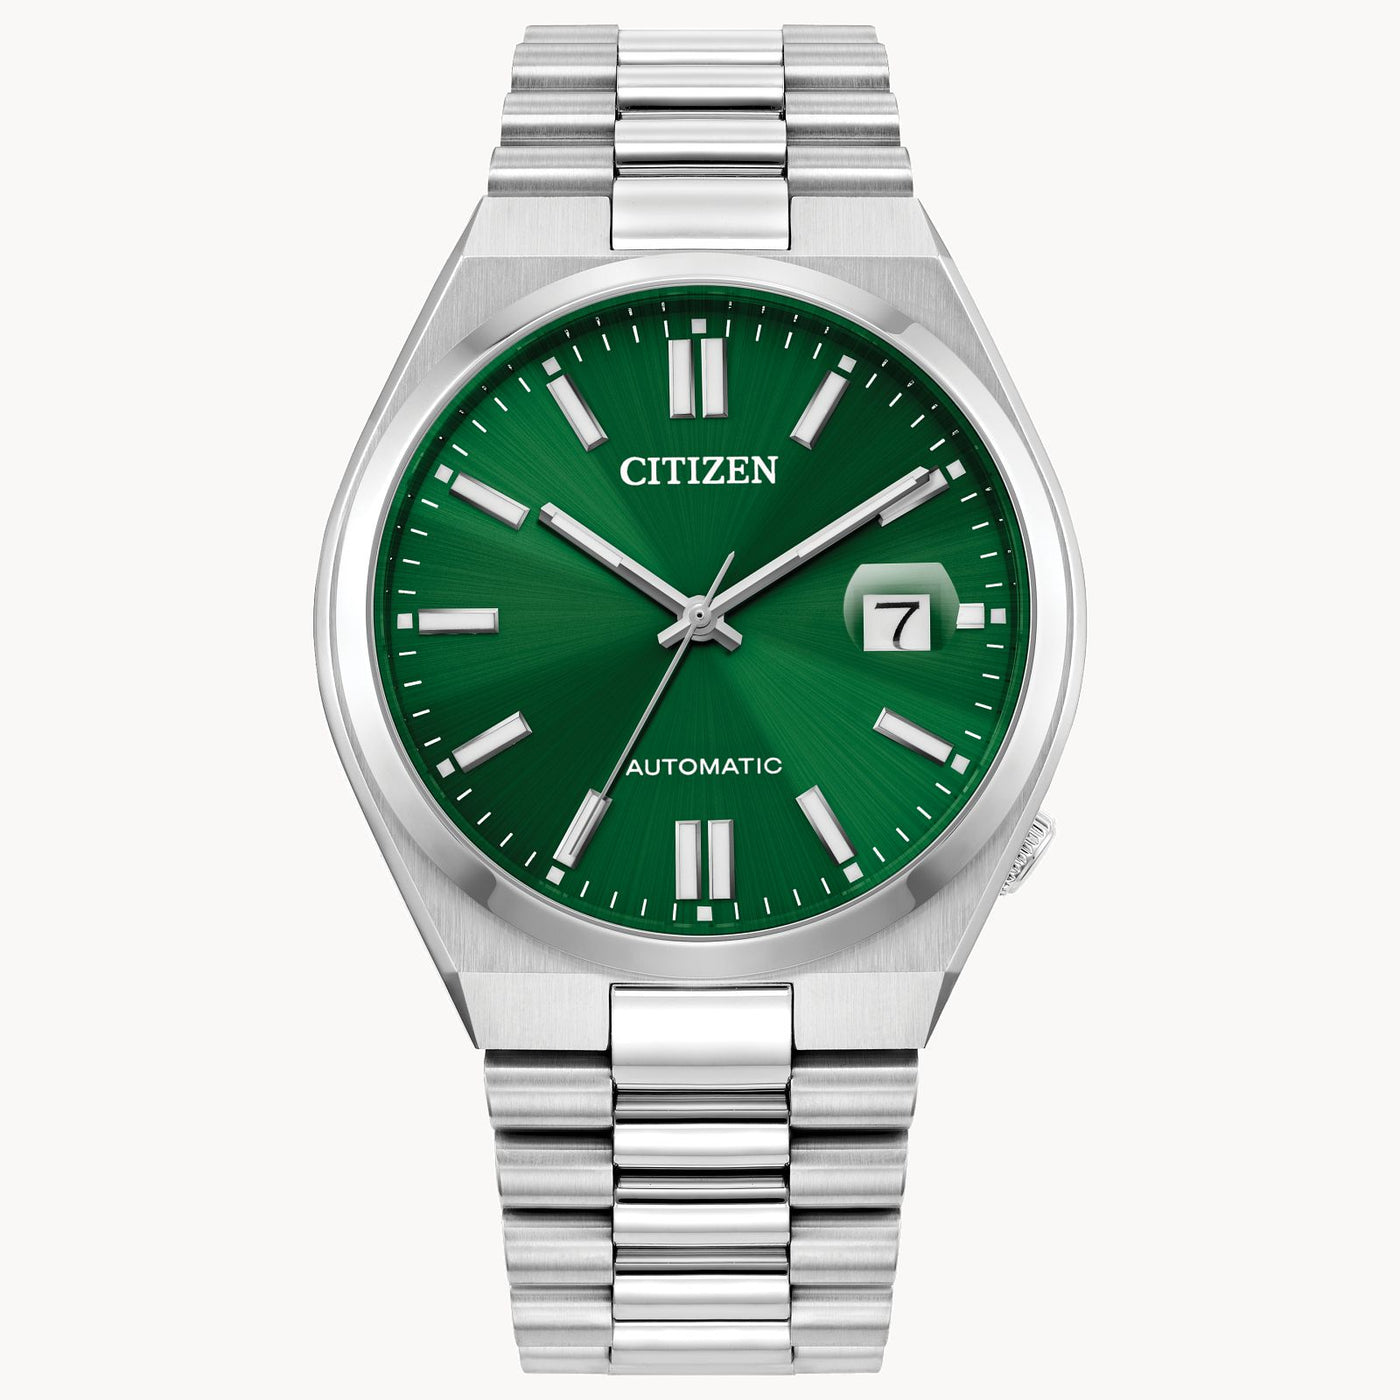 Citizen Men's watch